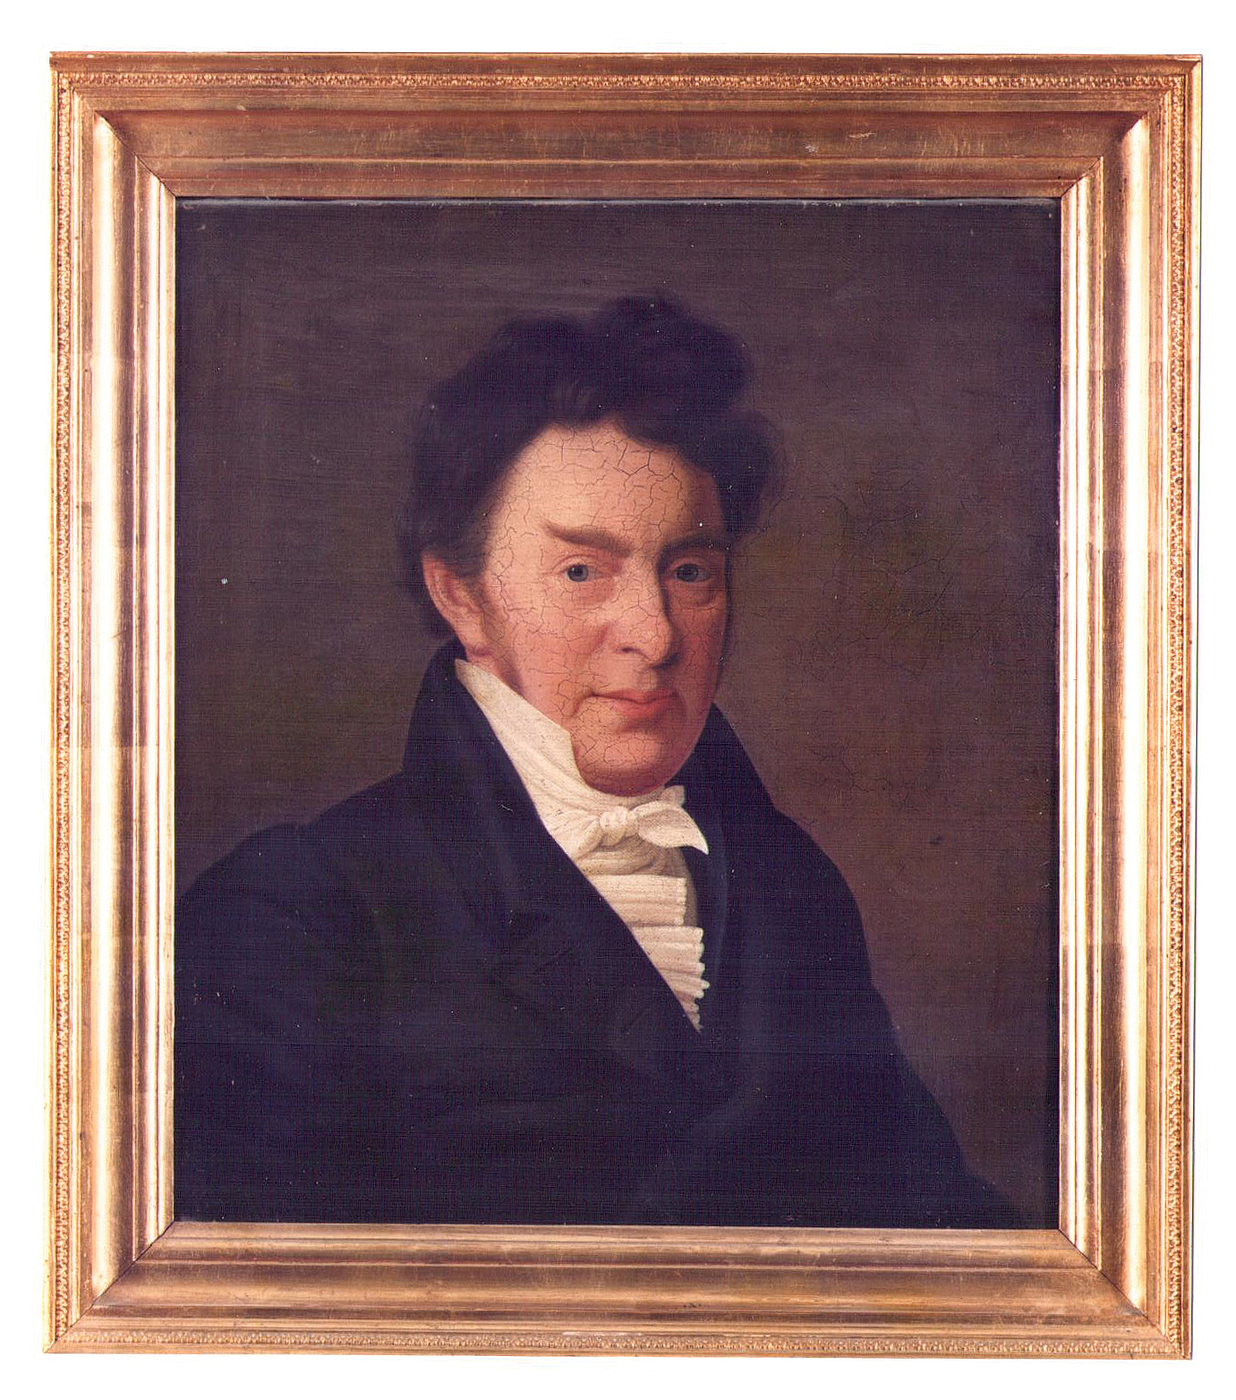 C. Hornemann, Portræt af R. B. Bojesen